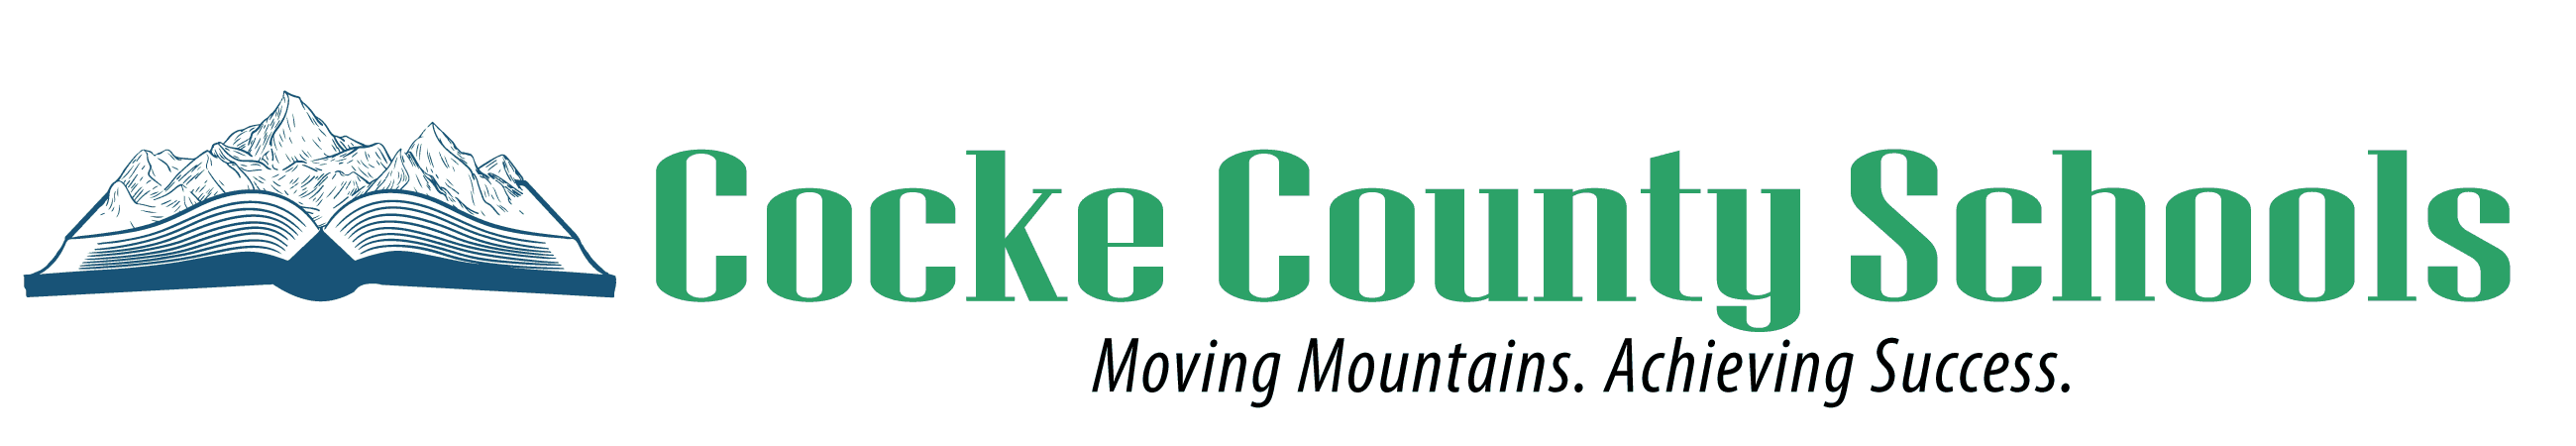 Cocke County Schools Logo 022120 ?x70693